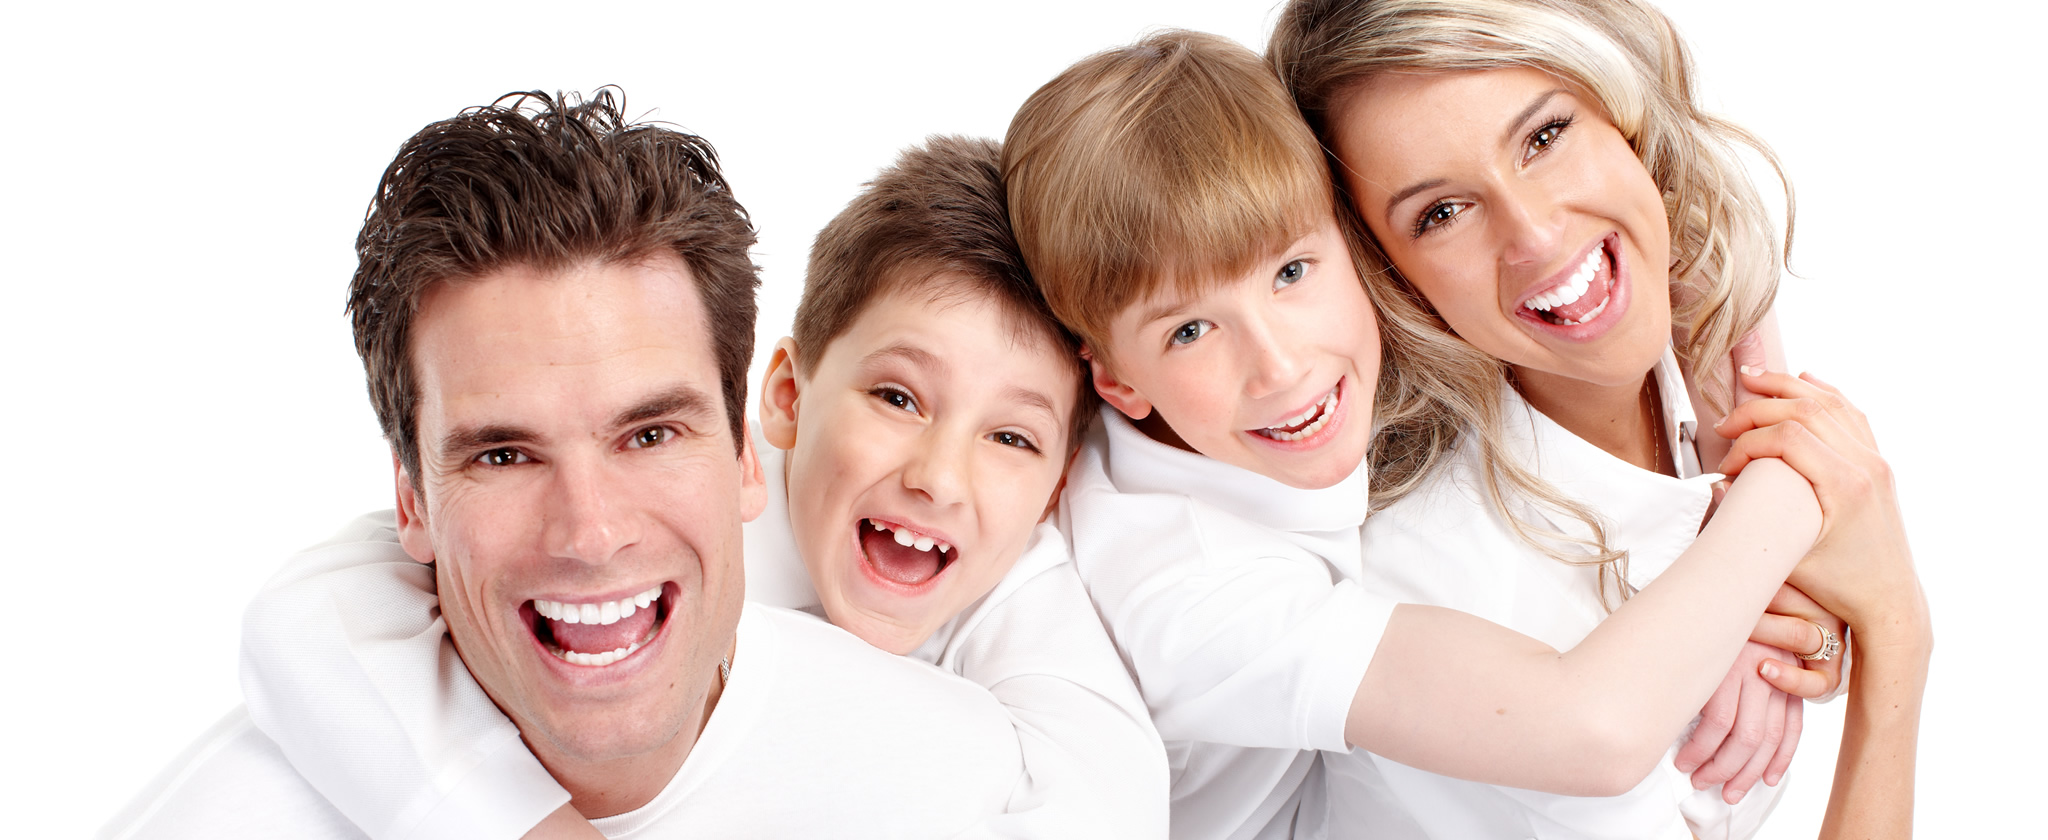 Семейная стоматология для счастливых улыбок